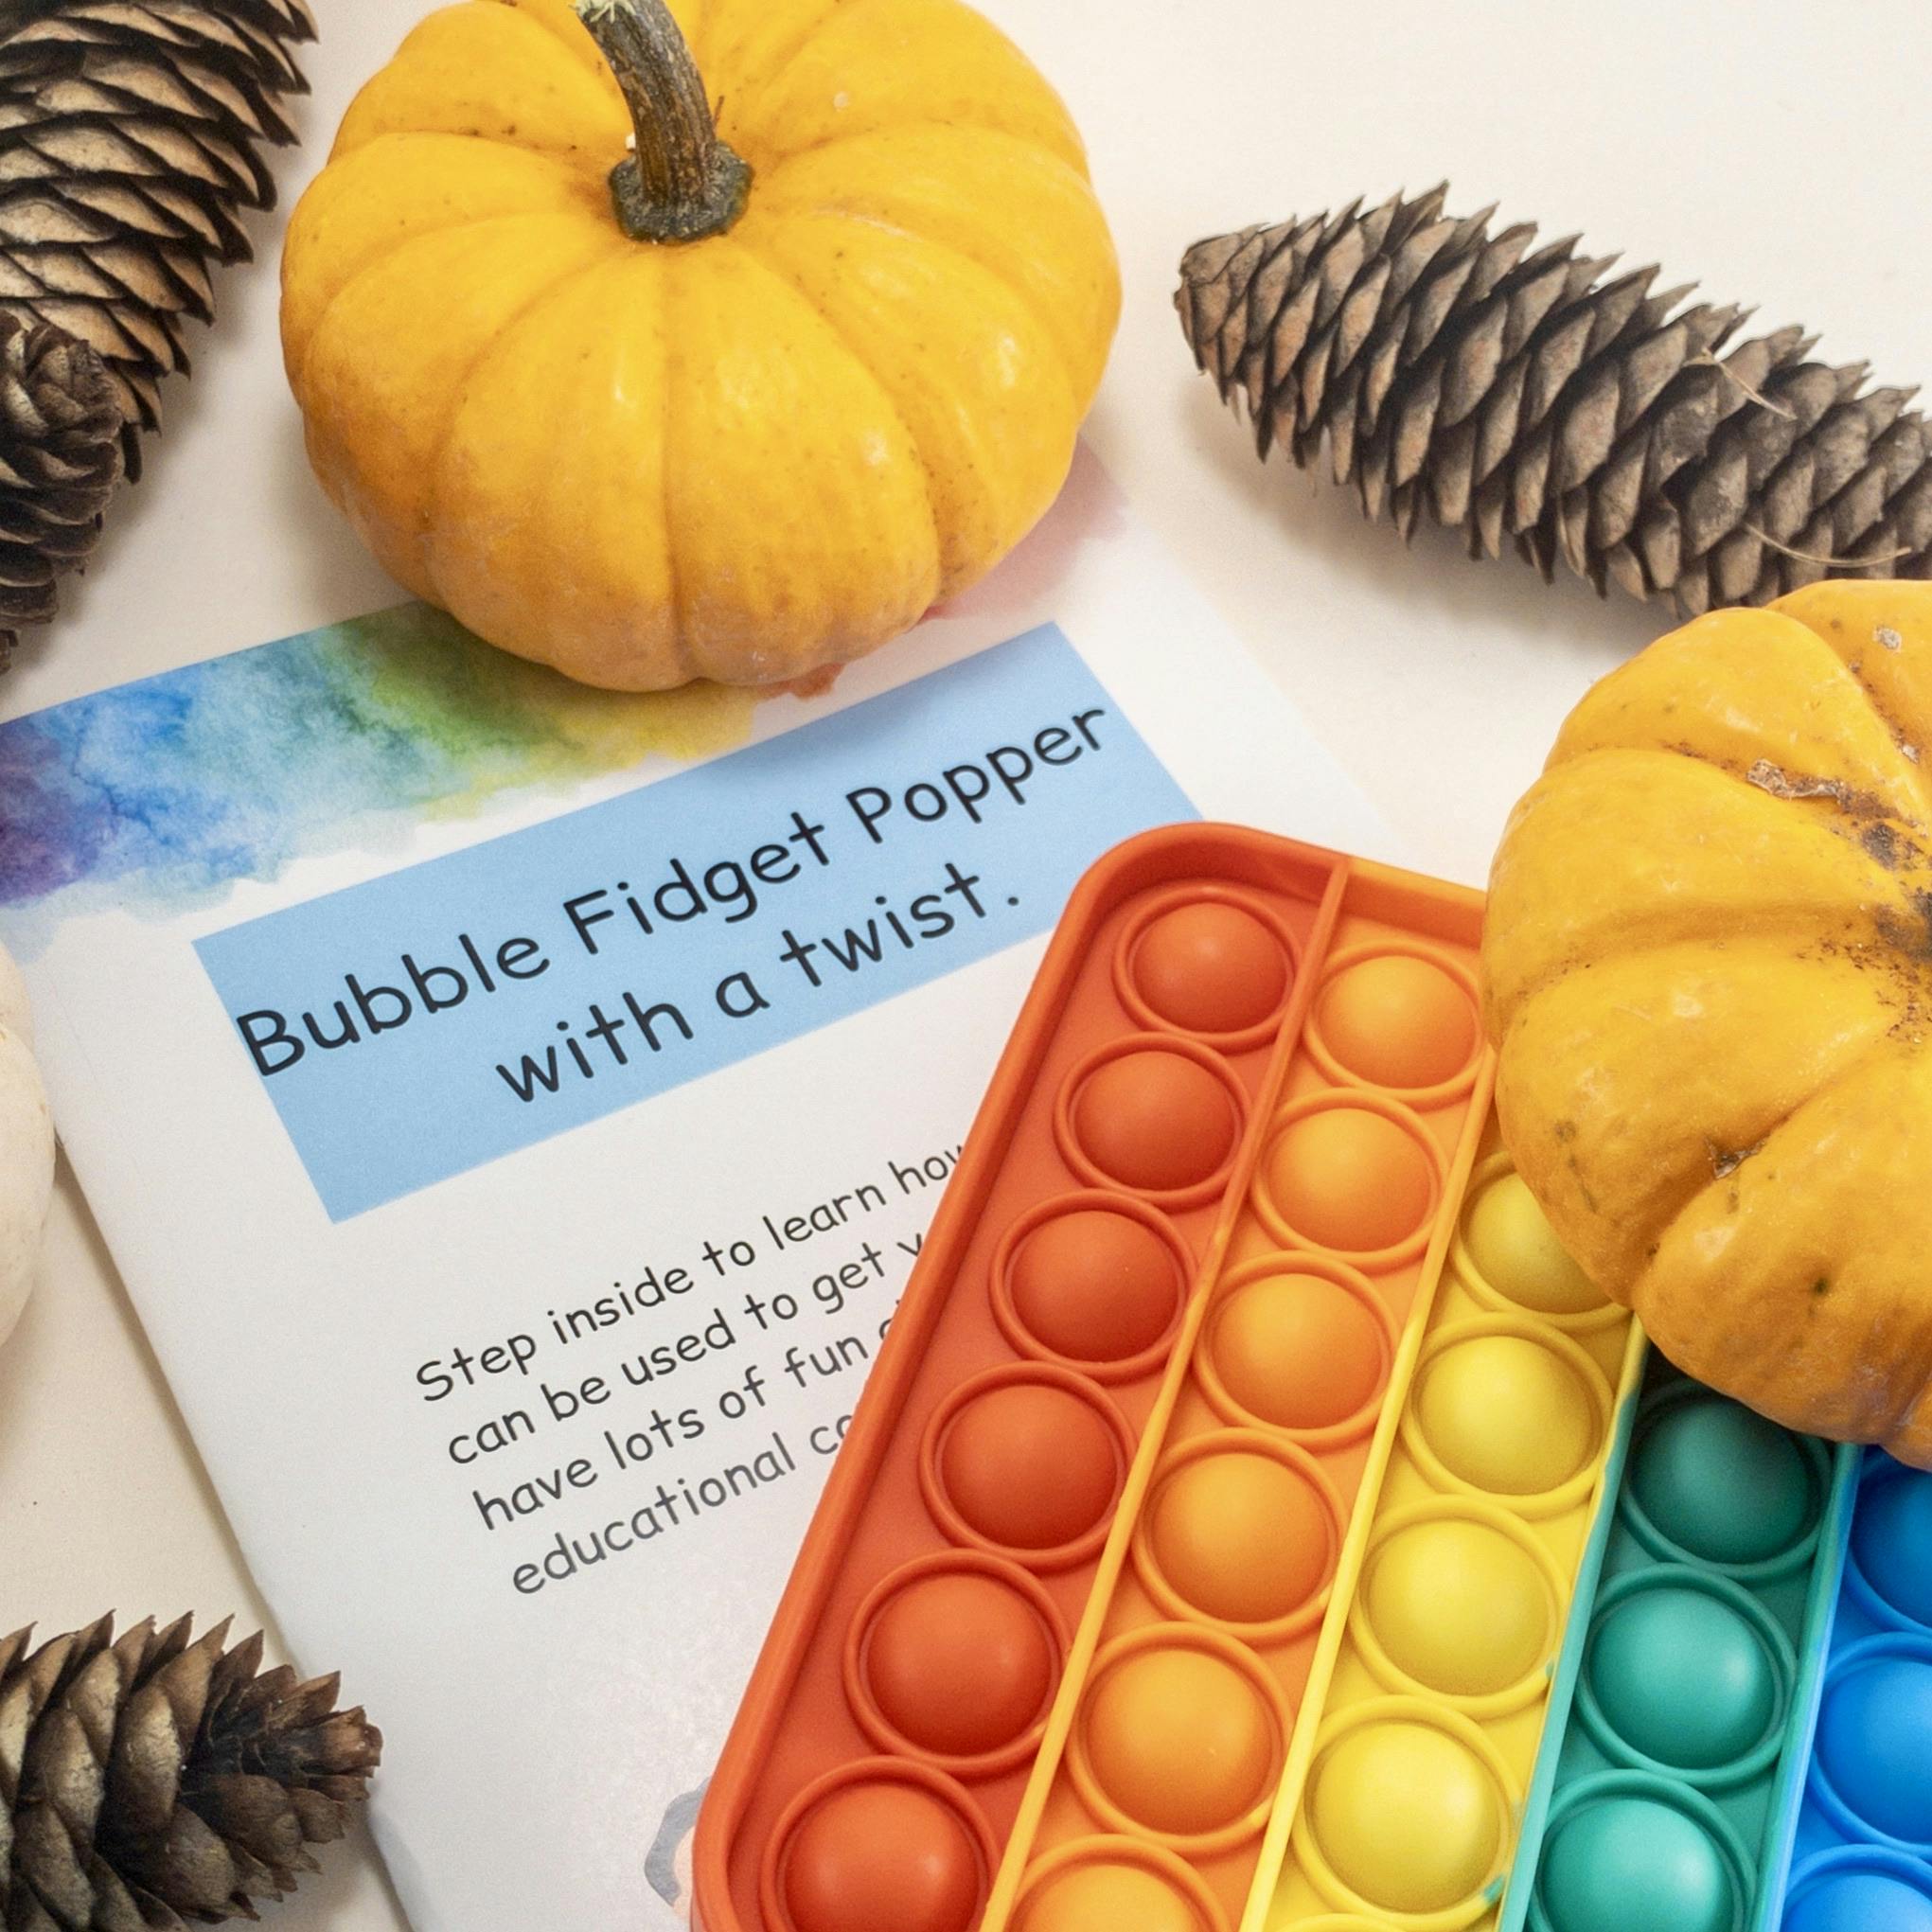 Bubble FIdget and Booklet